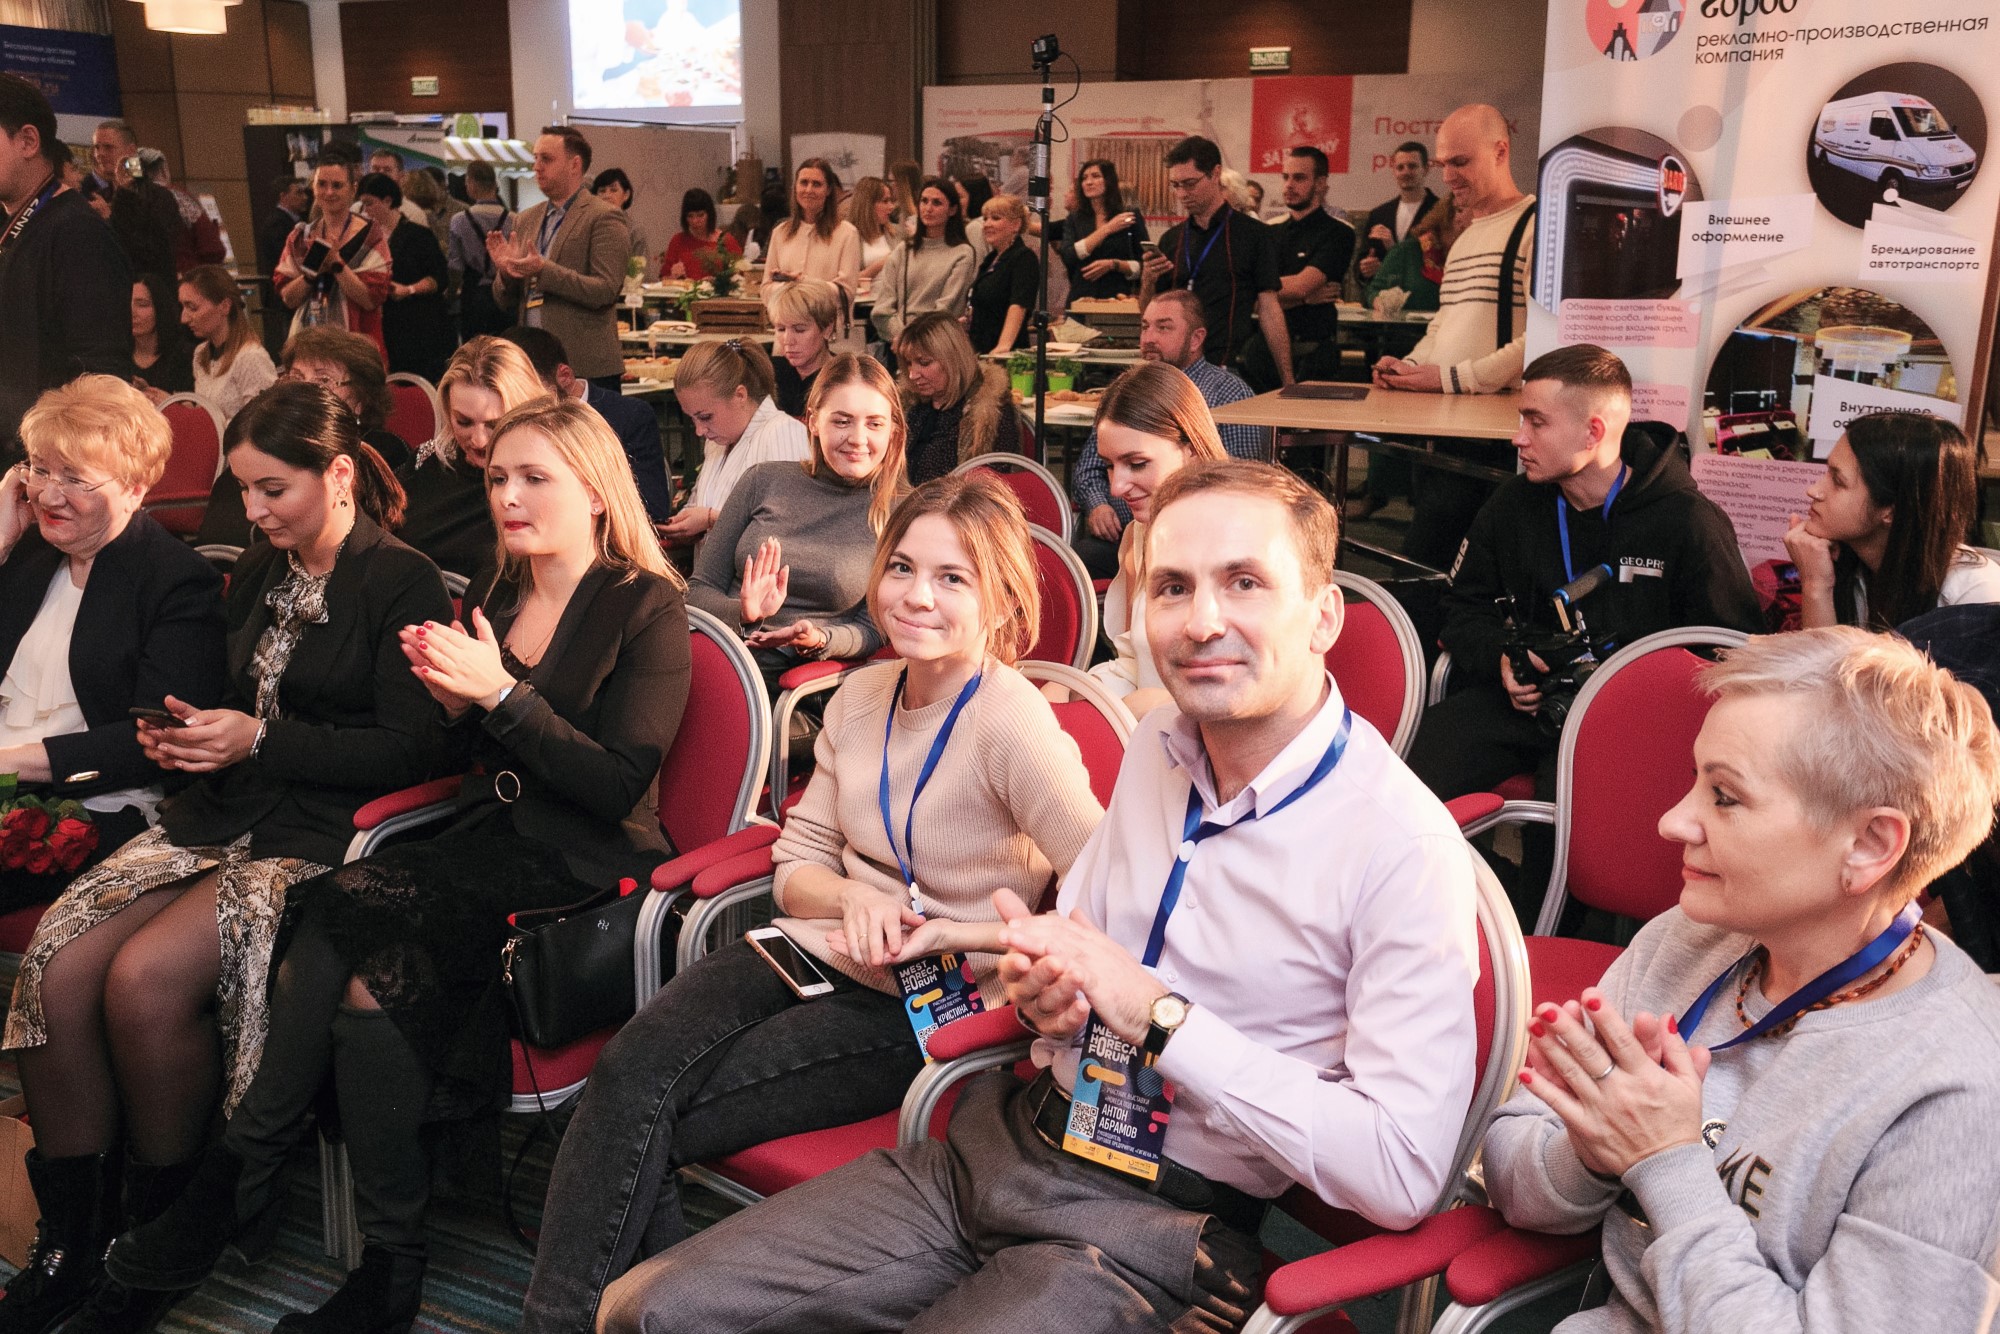 Как пройдёт юбилейный West HoReCa Forum в Калининграде